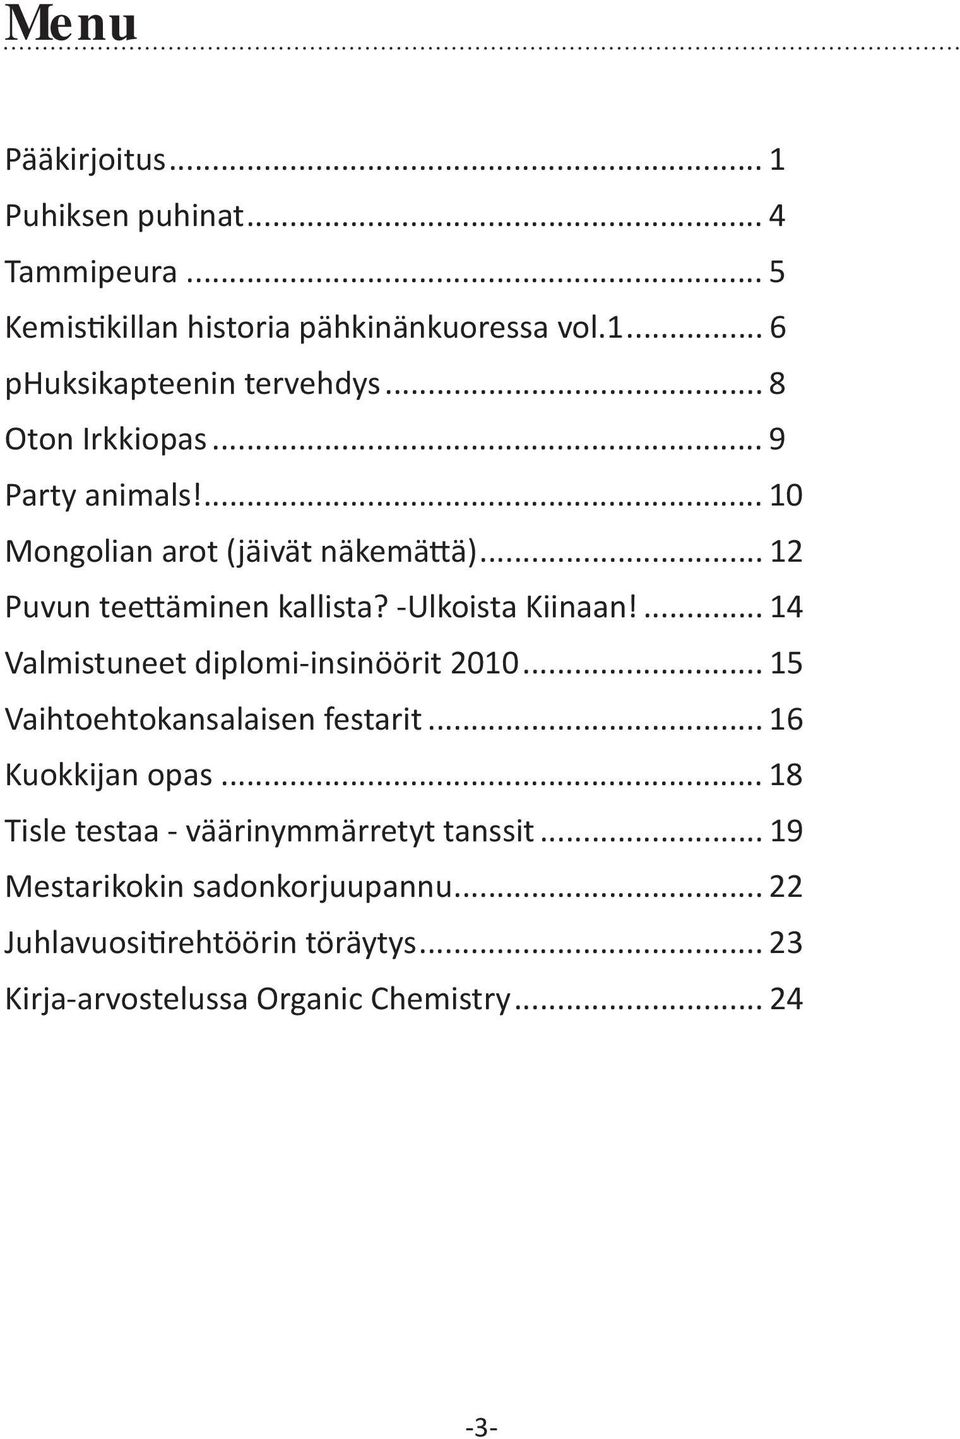 ... 14 Valmistuneet diplomi-insinöörit 2010... 15 Vaihtoehtokansalaisen festarit... 16 Kuokkijan opas.